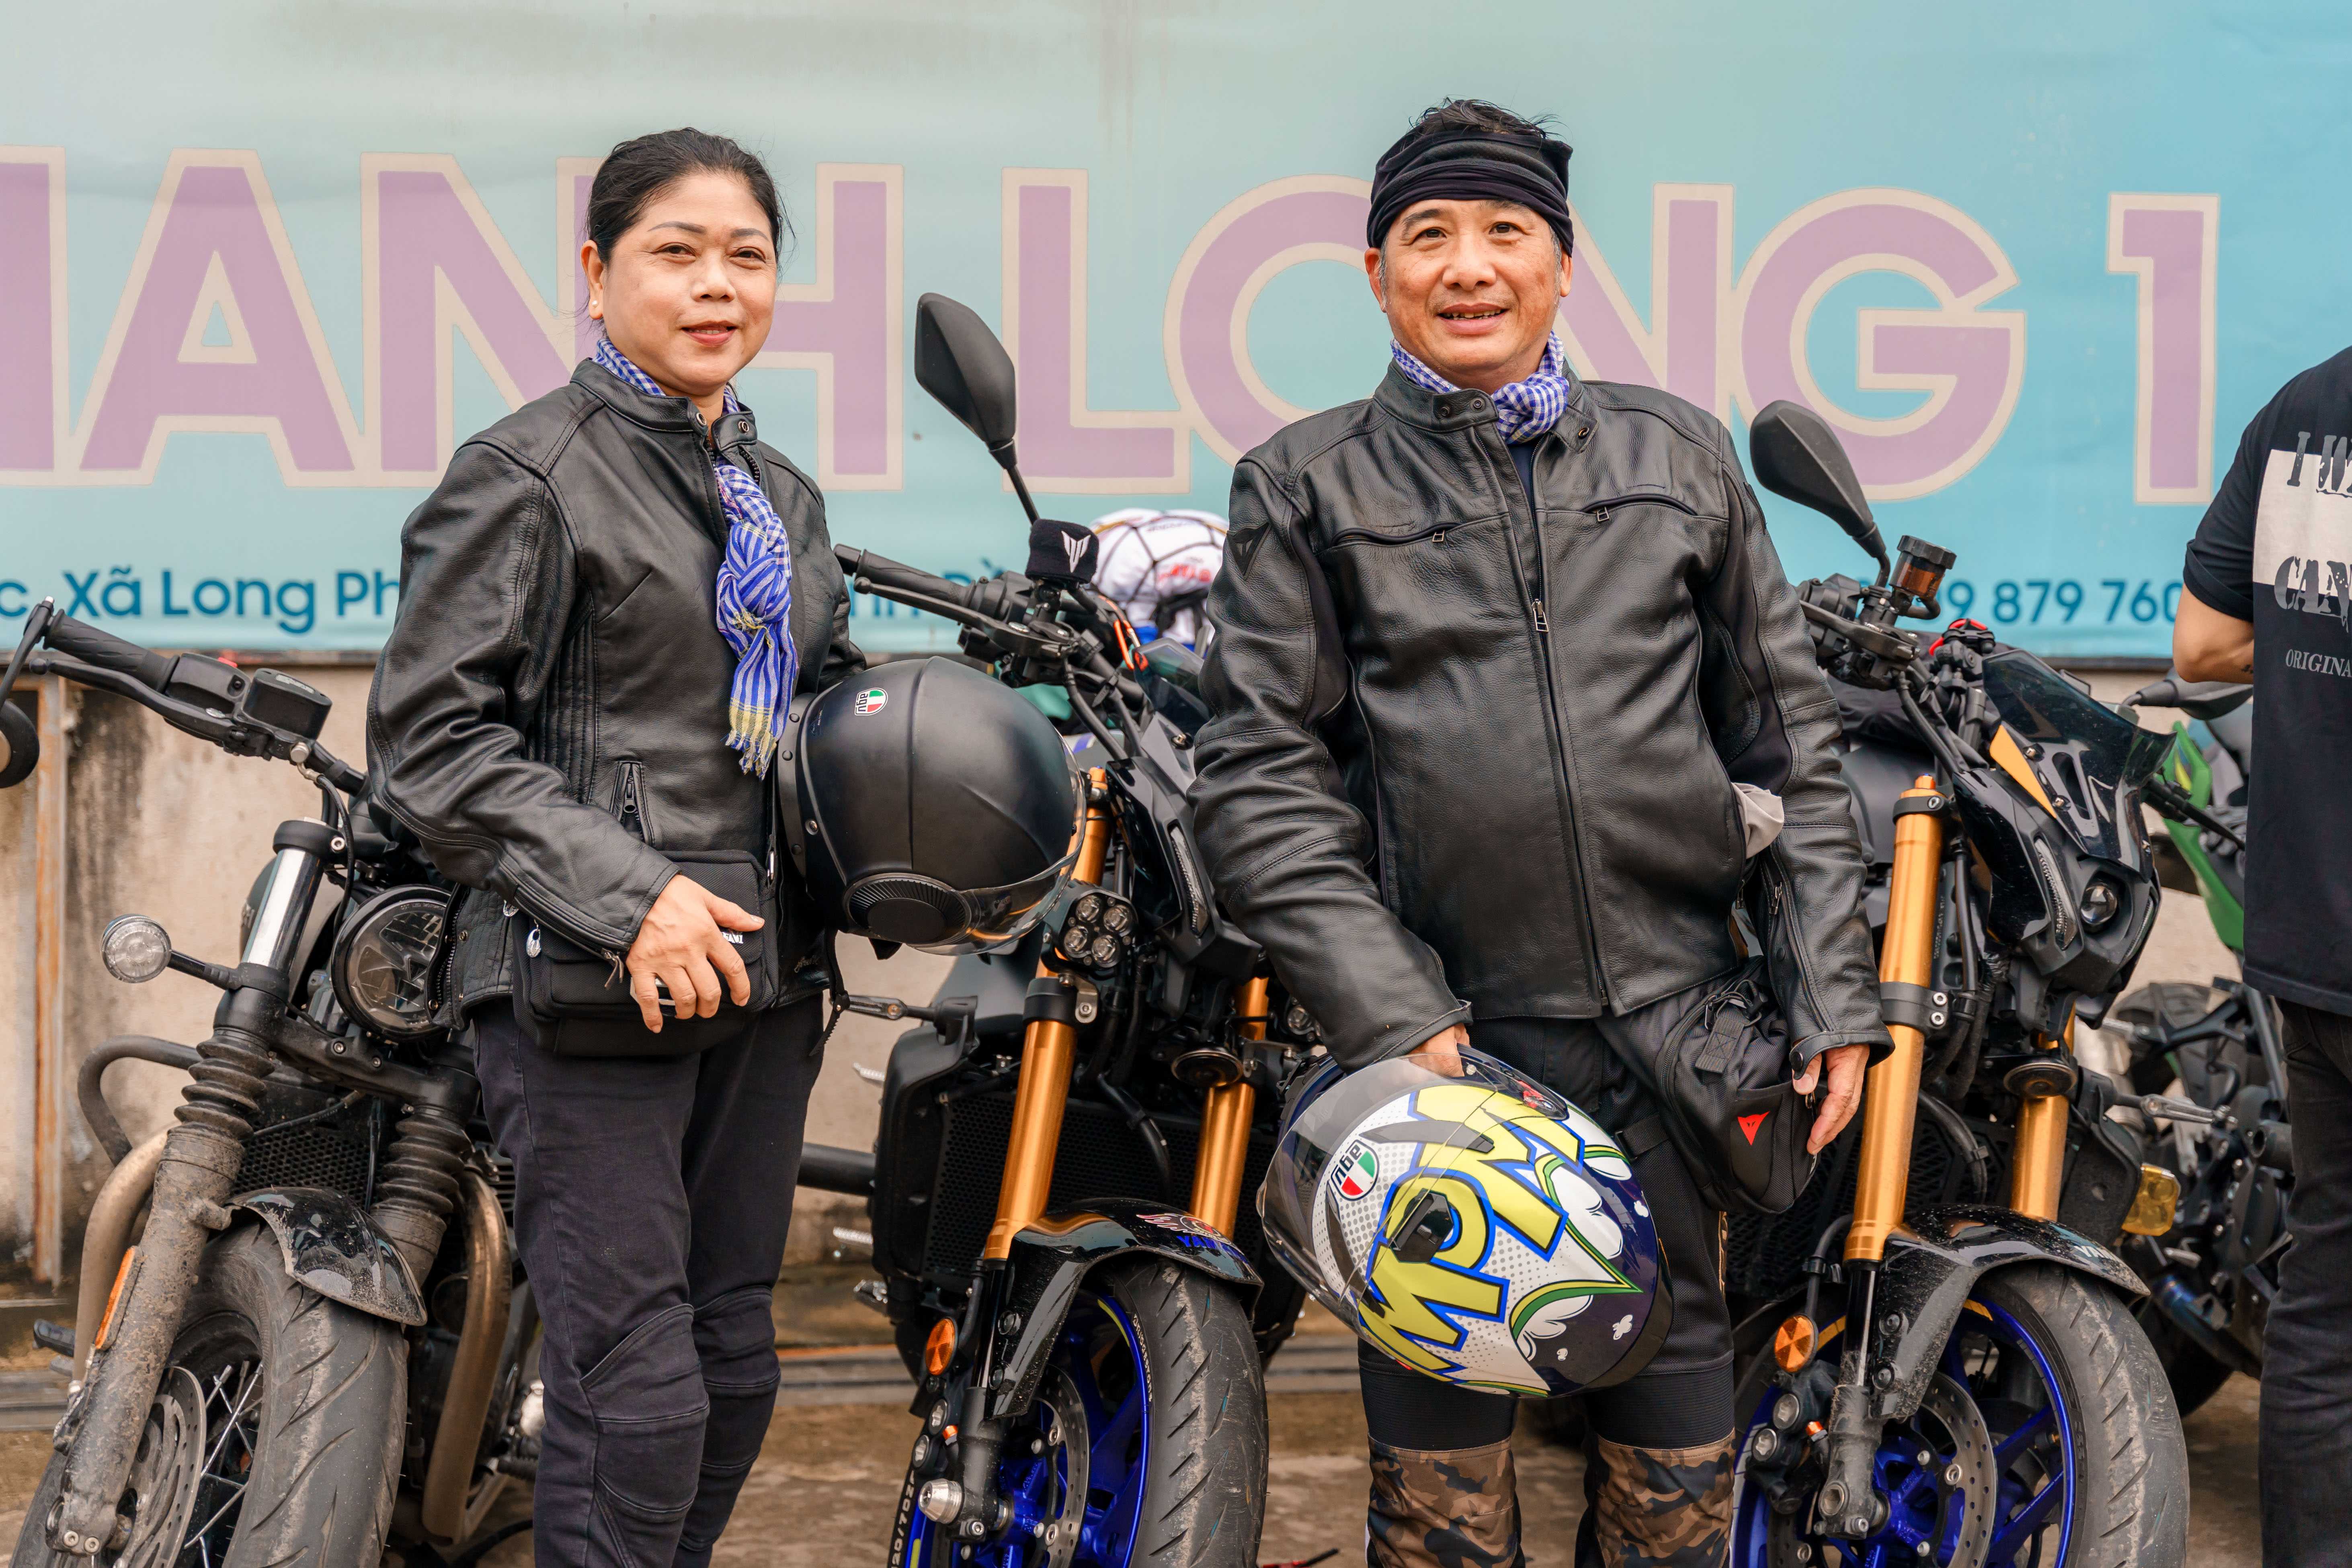 Revzone Phan Thiet Ride: Toàn cảnh hành trình 500km hội ngộ tại Phan Thiết Revzone Phan Thiet Ride (10).jpg